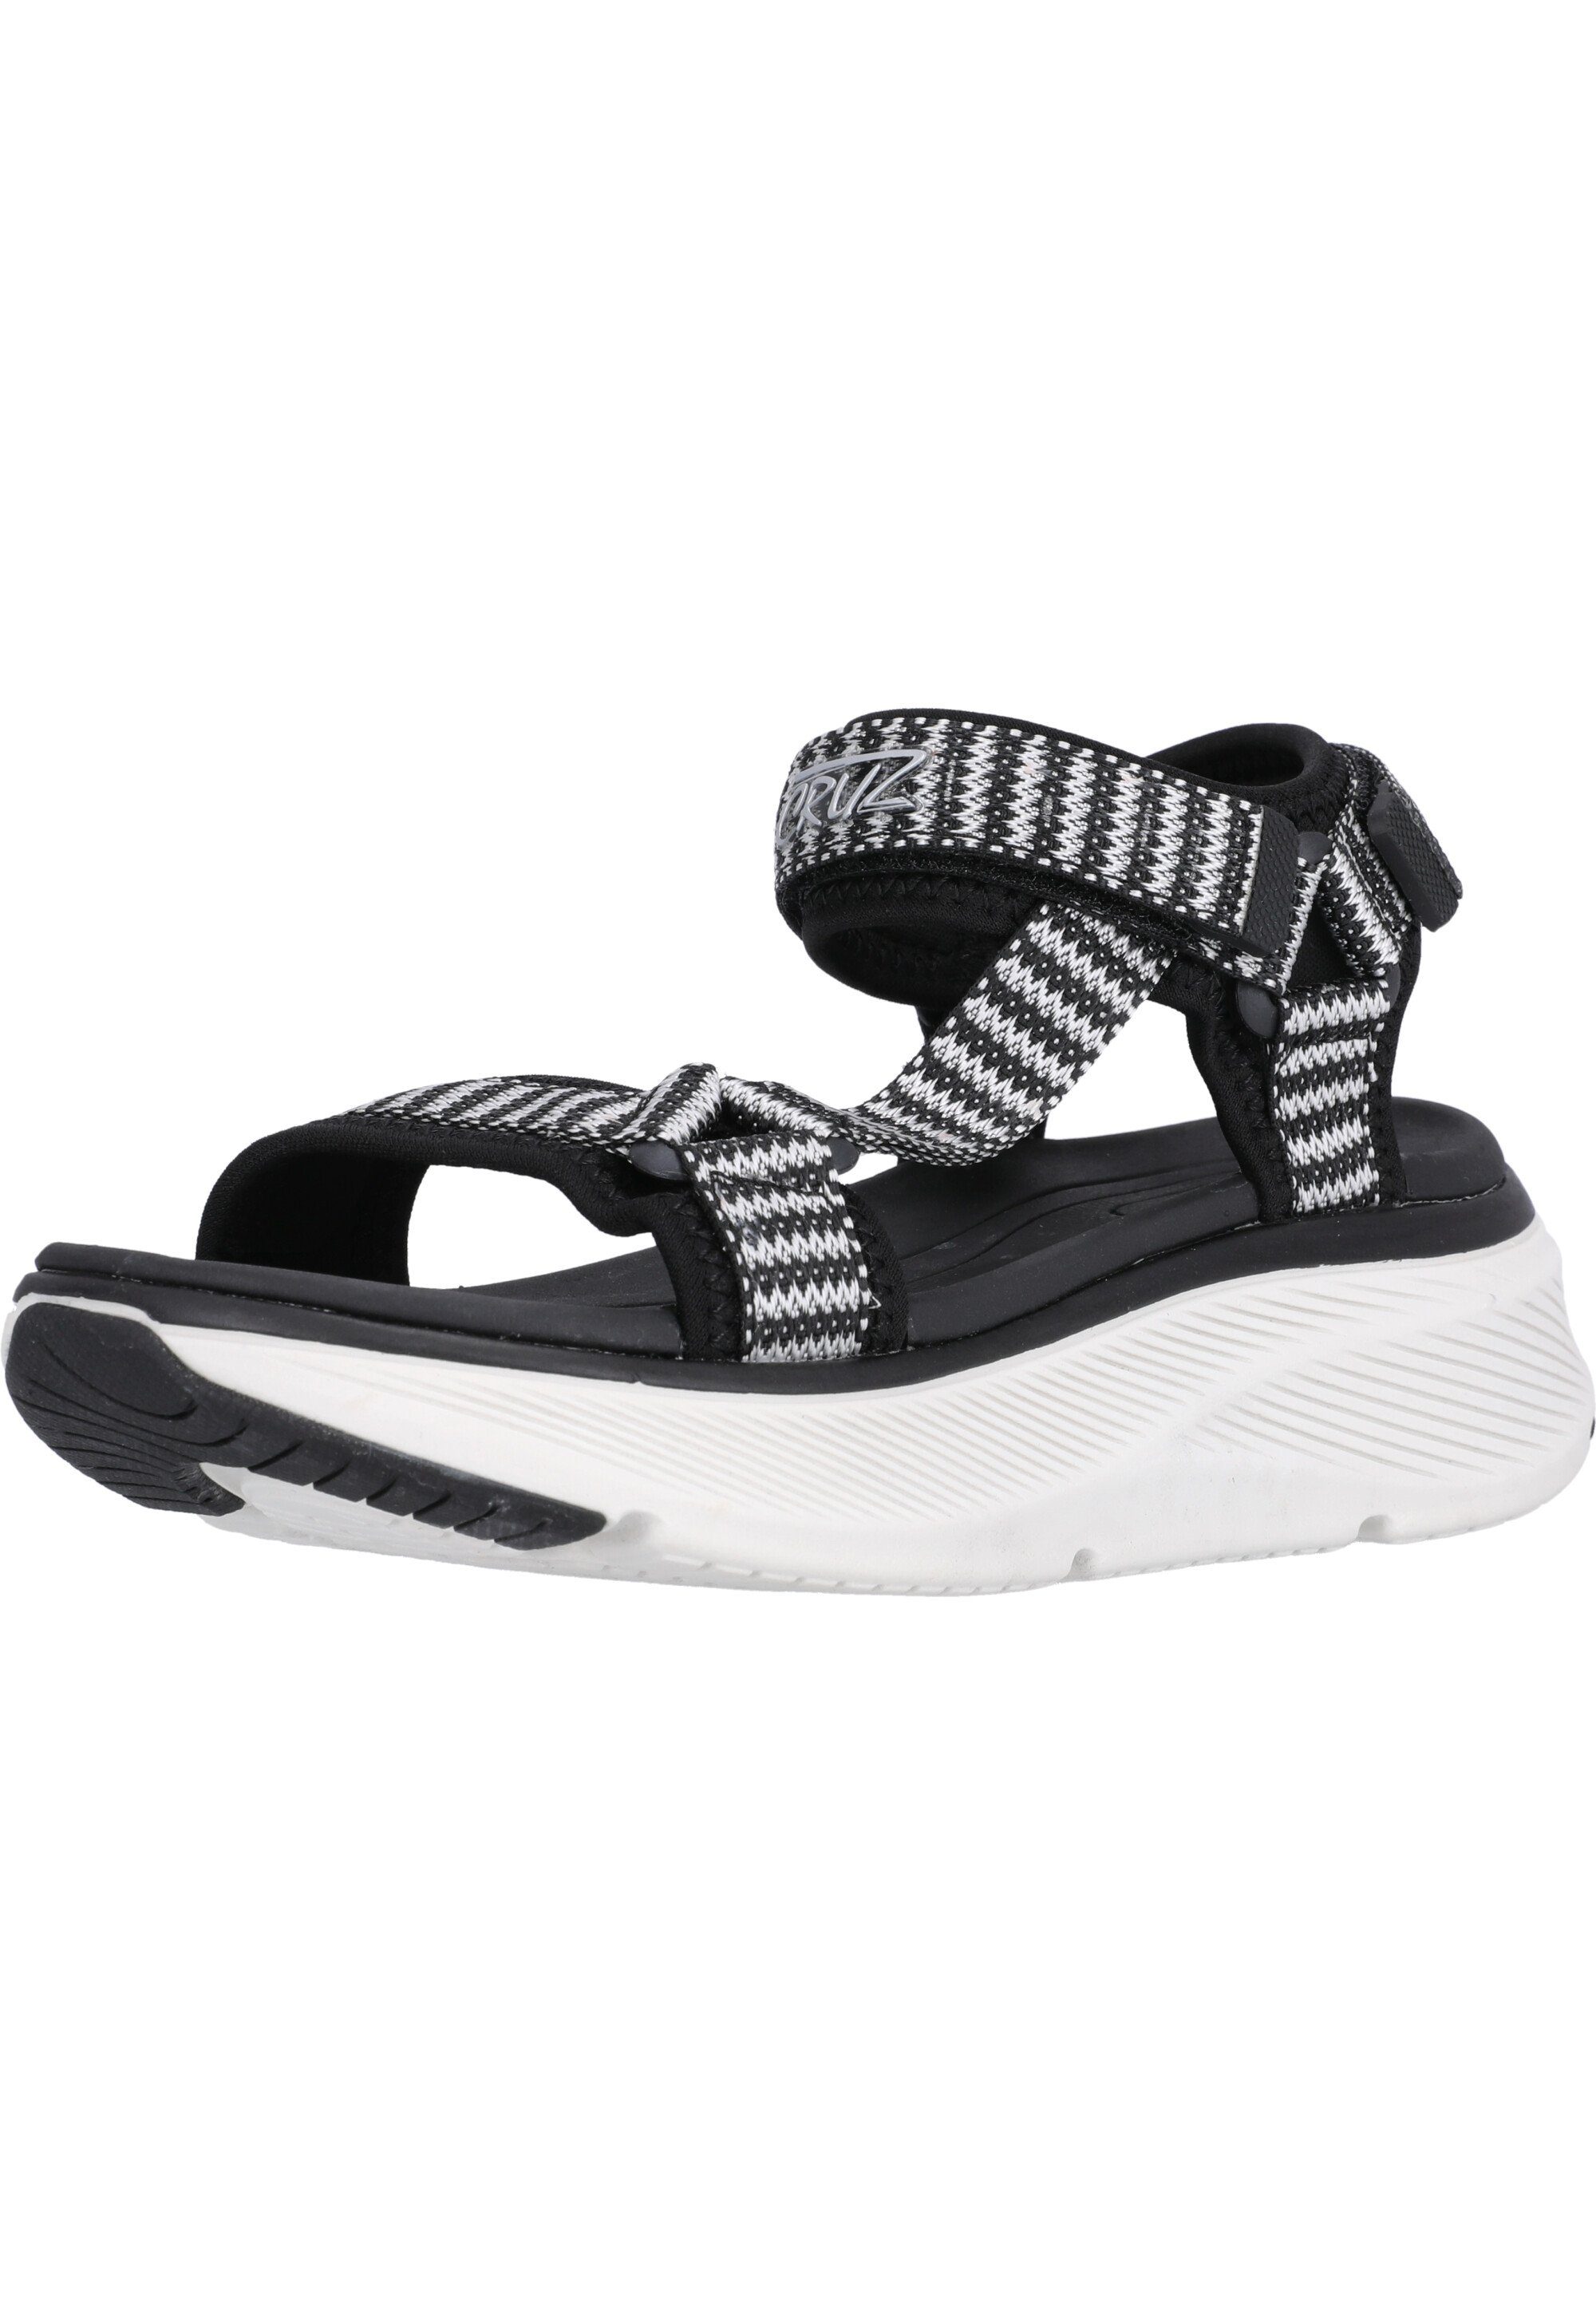 CRUZ Findel Sandale mit praktischem Allwetterprofil schwarz-weiß | Riemchensandalen